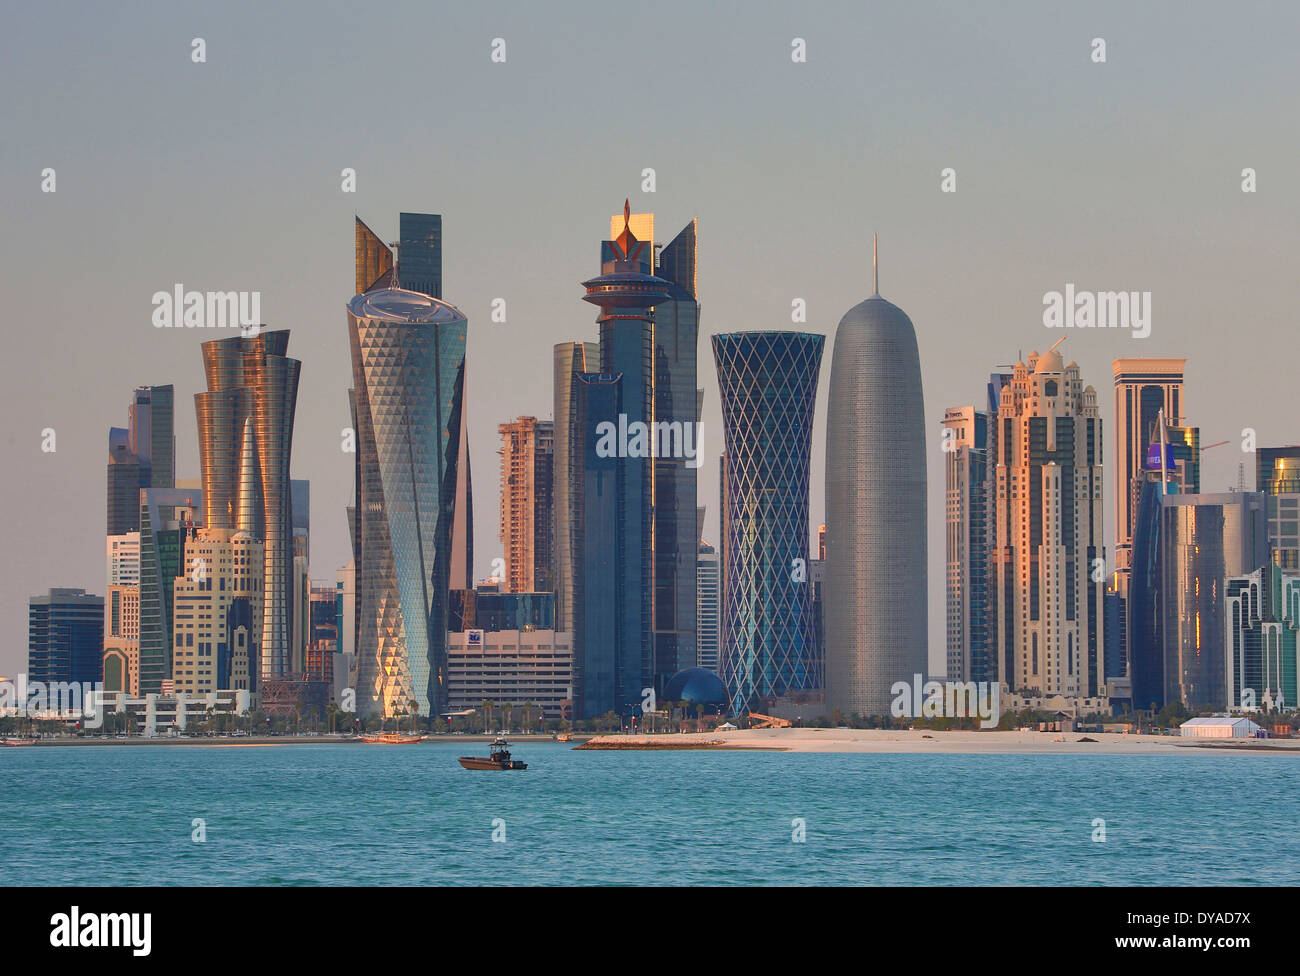 Al Bidda Burj Doha Katar Nahost World Trade Center Architektur Bay City Farbe bunte Corniche futuristische Skyline s Stockfoto